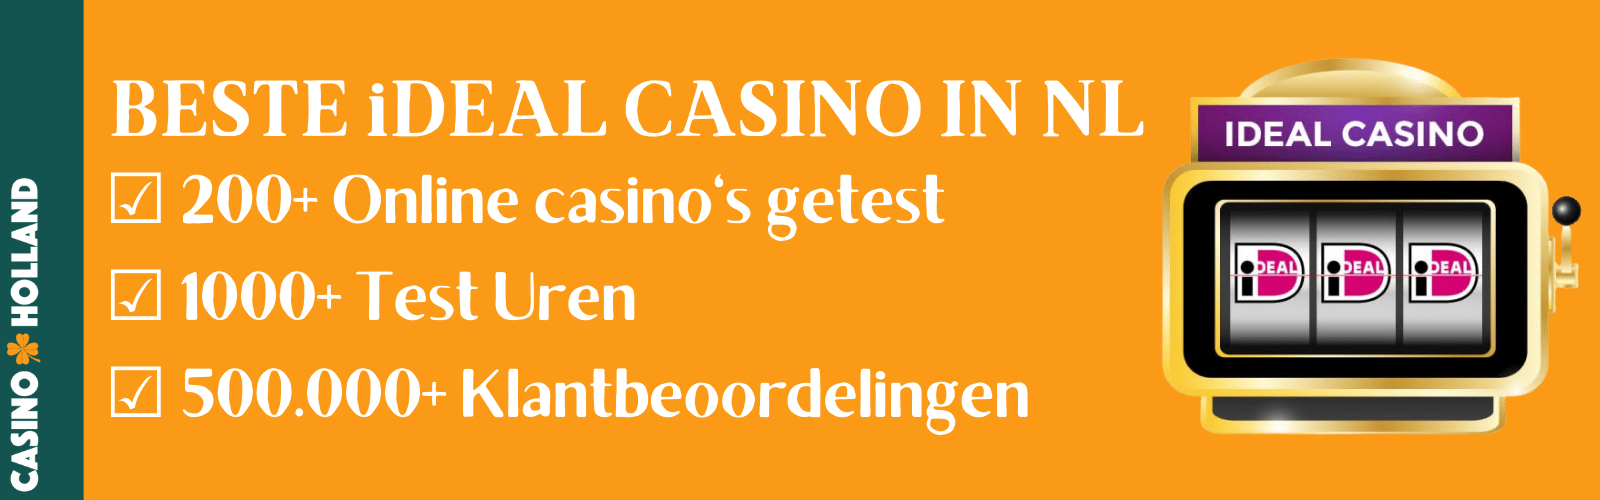 iDeal Casino